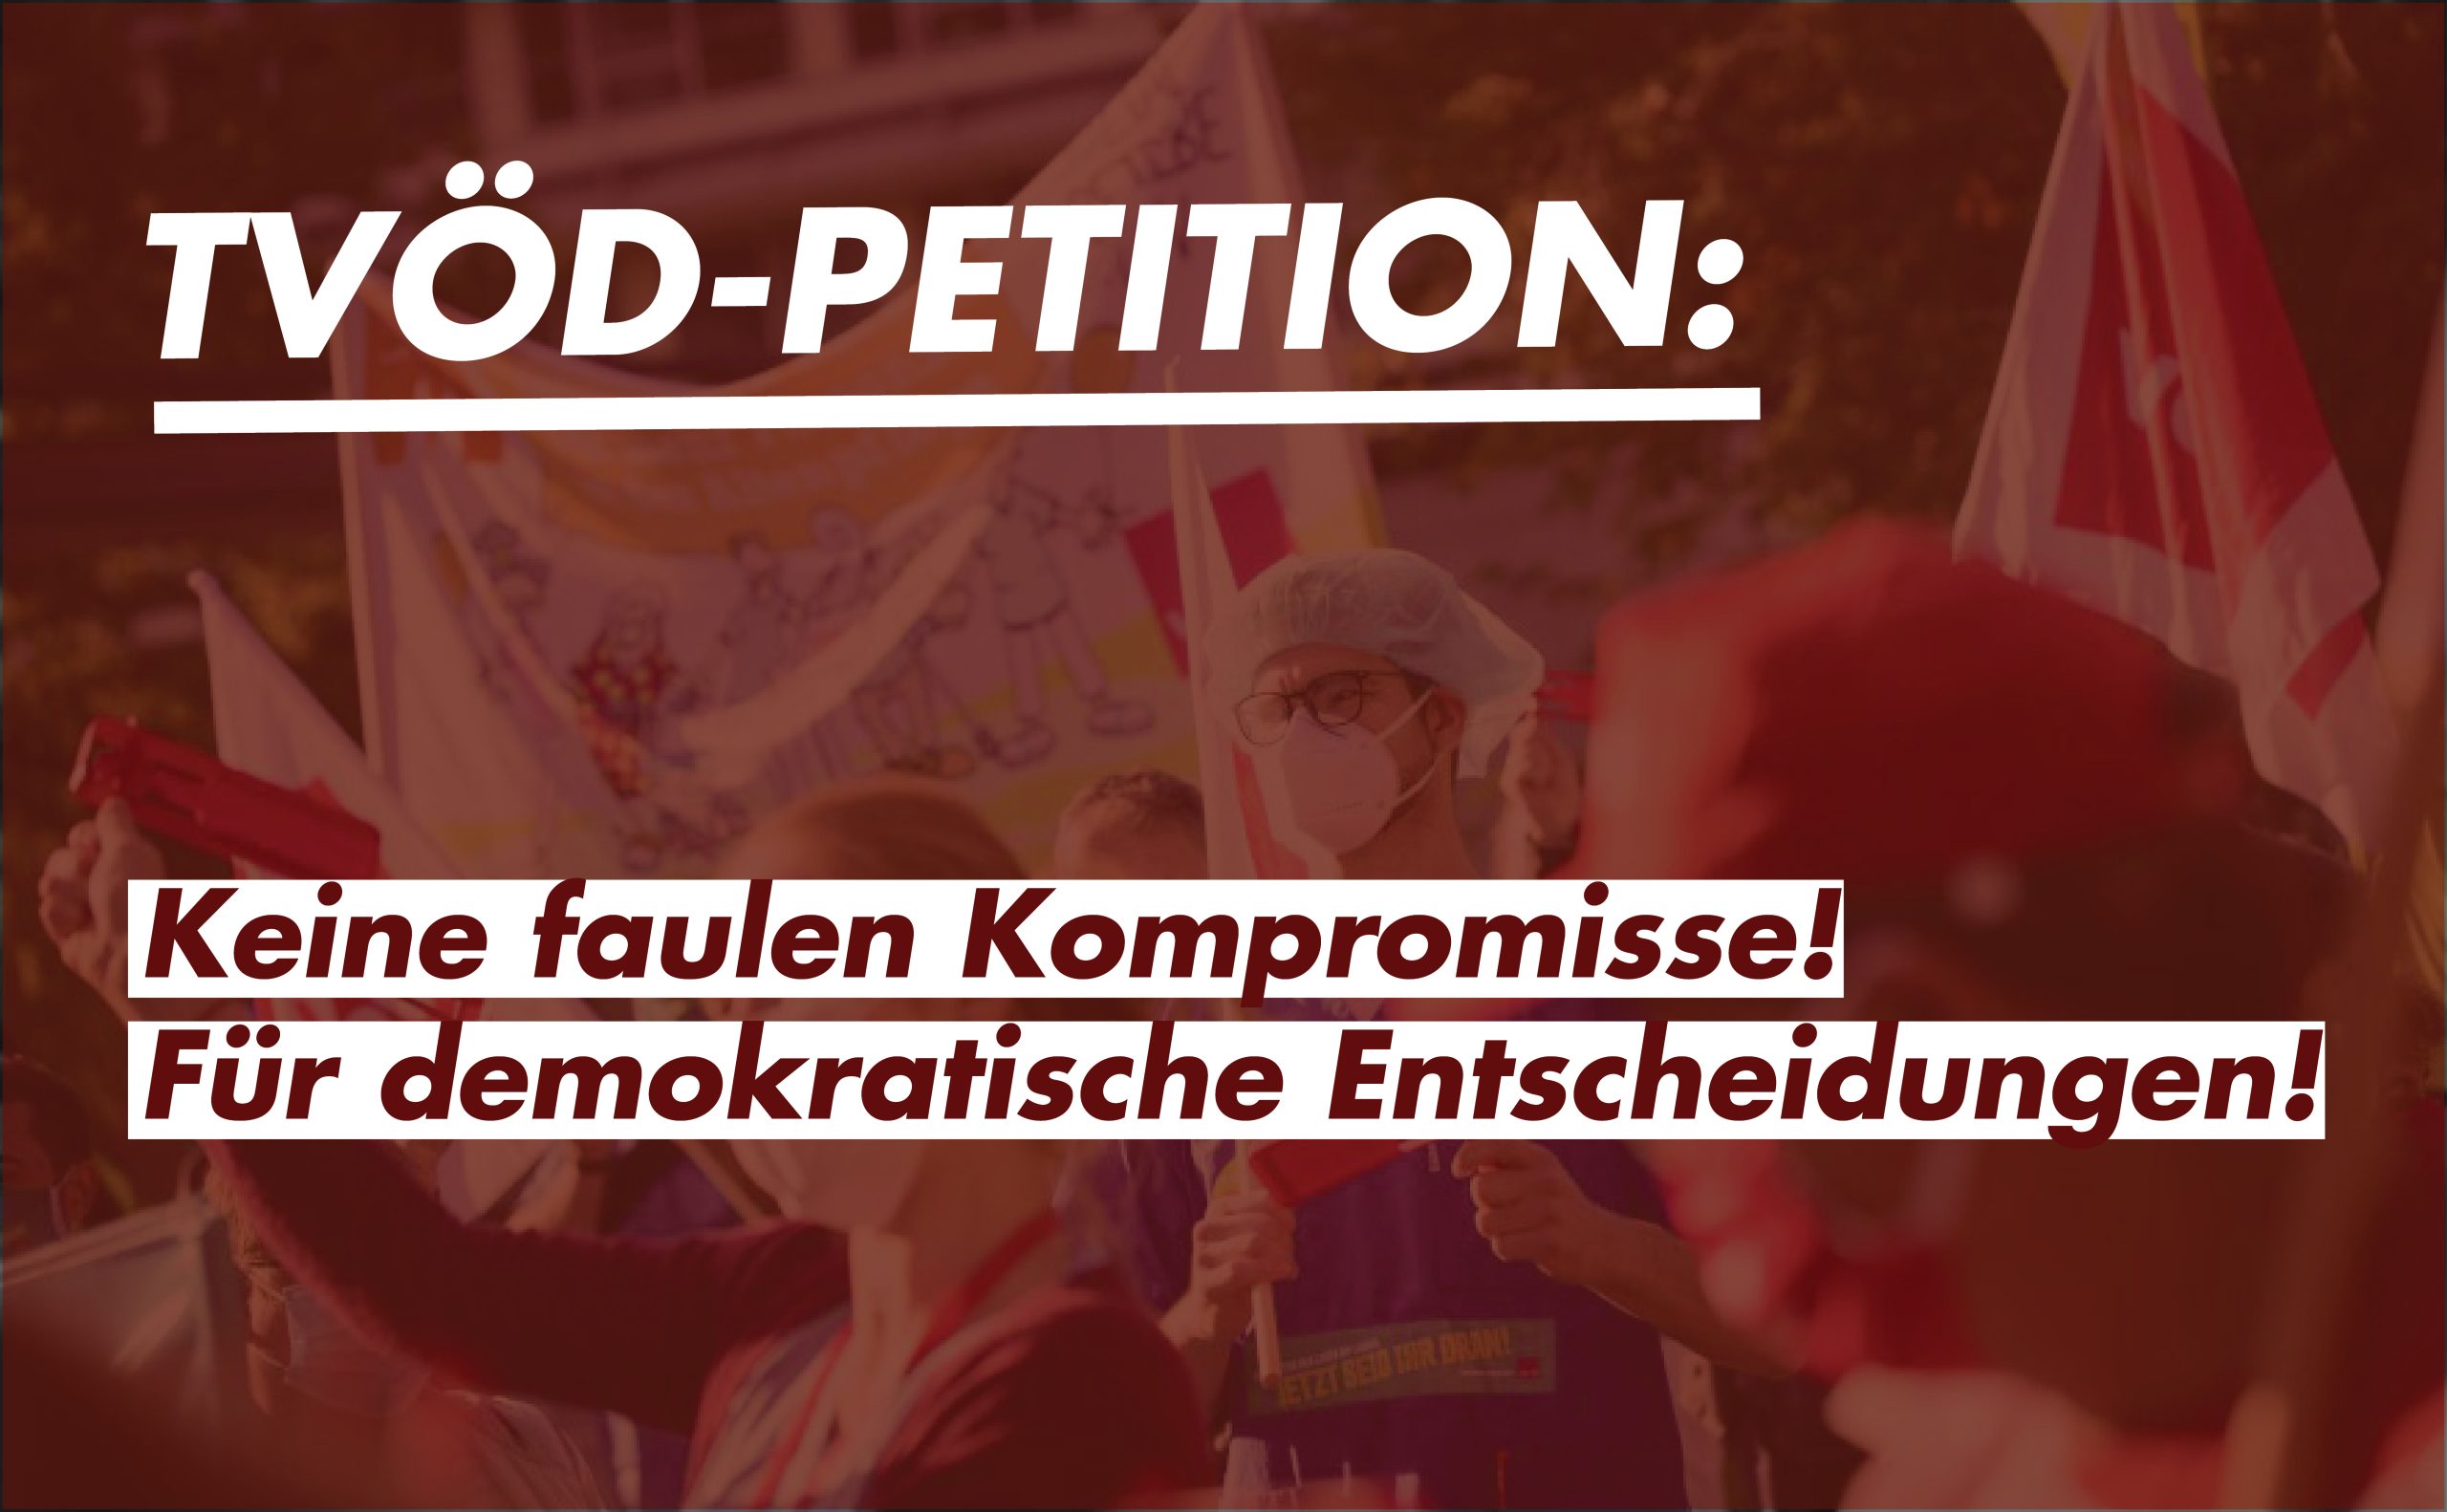 TVöD-Petition: Keine faulen Kompromisse! Für demokratische Entscheidungen!